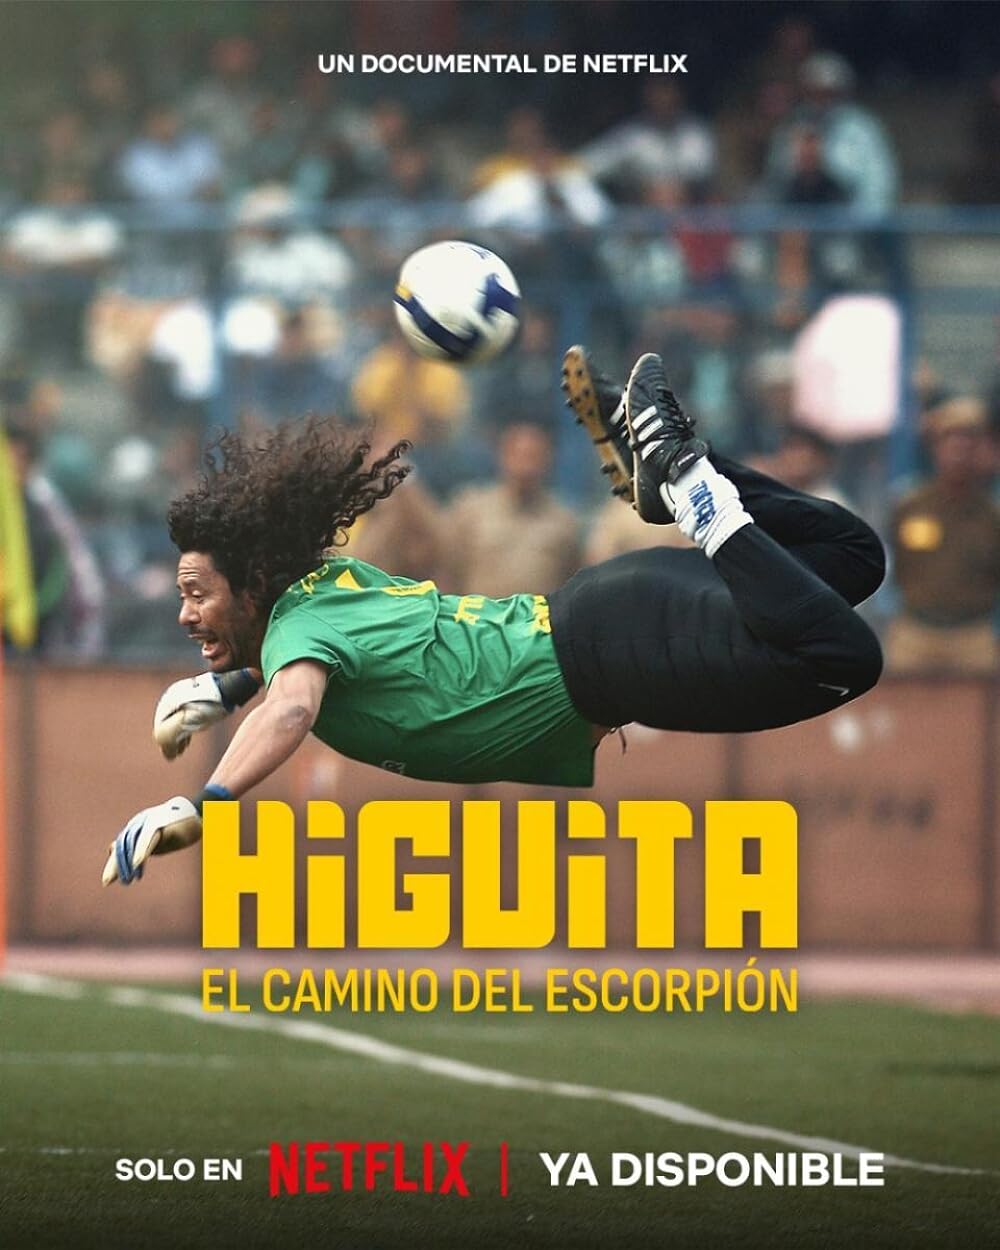 HIGUITA: THE WAY OF THE SCORPION (Higuita: El camino del EscorpiÃ³n)